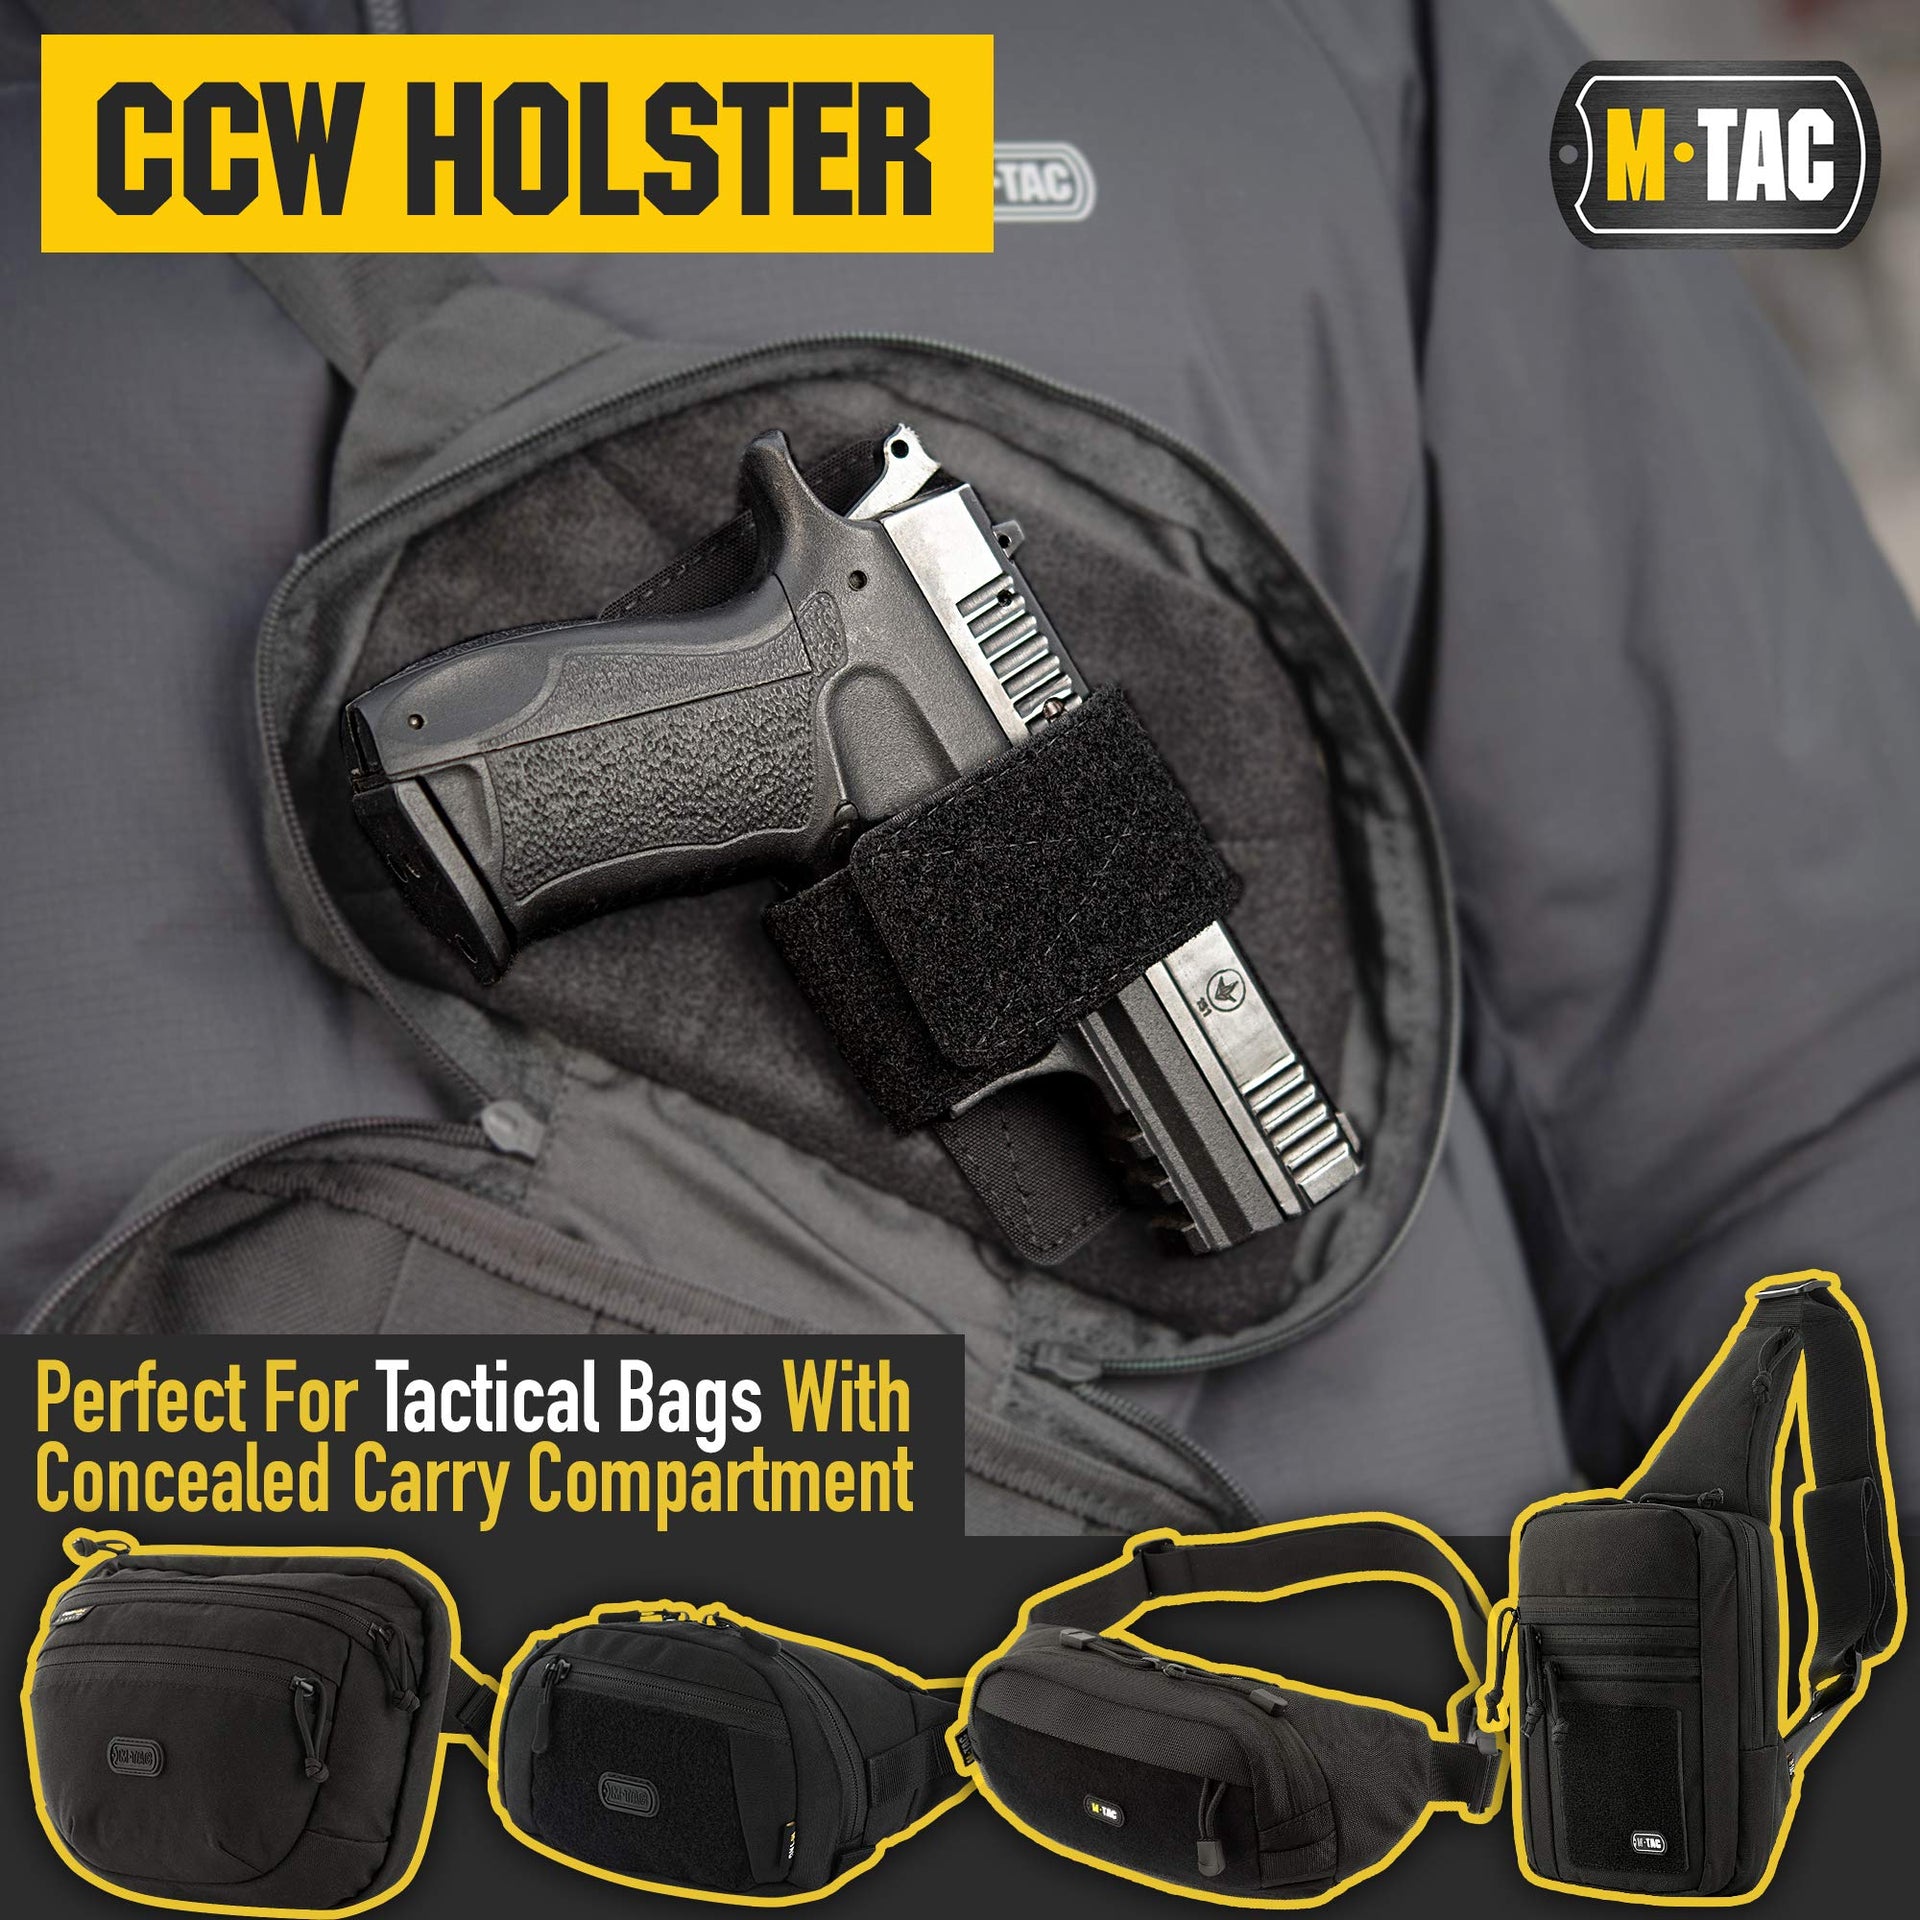 M-Tac CCW Holster - Modular Universal Holster